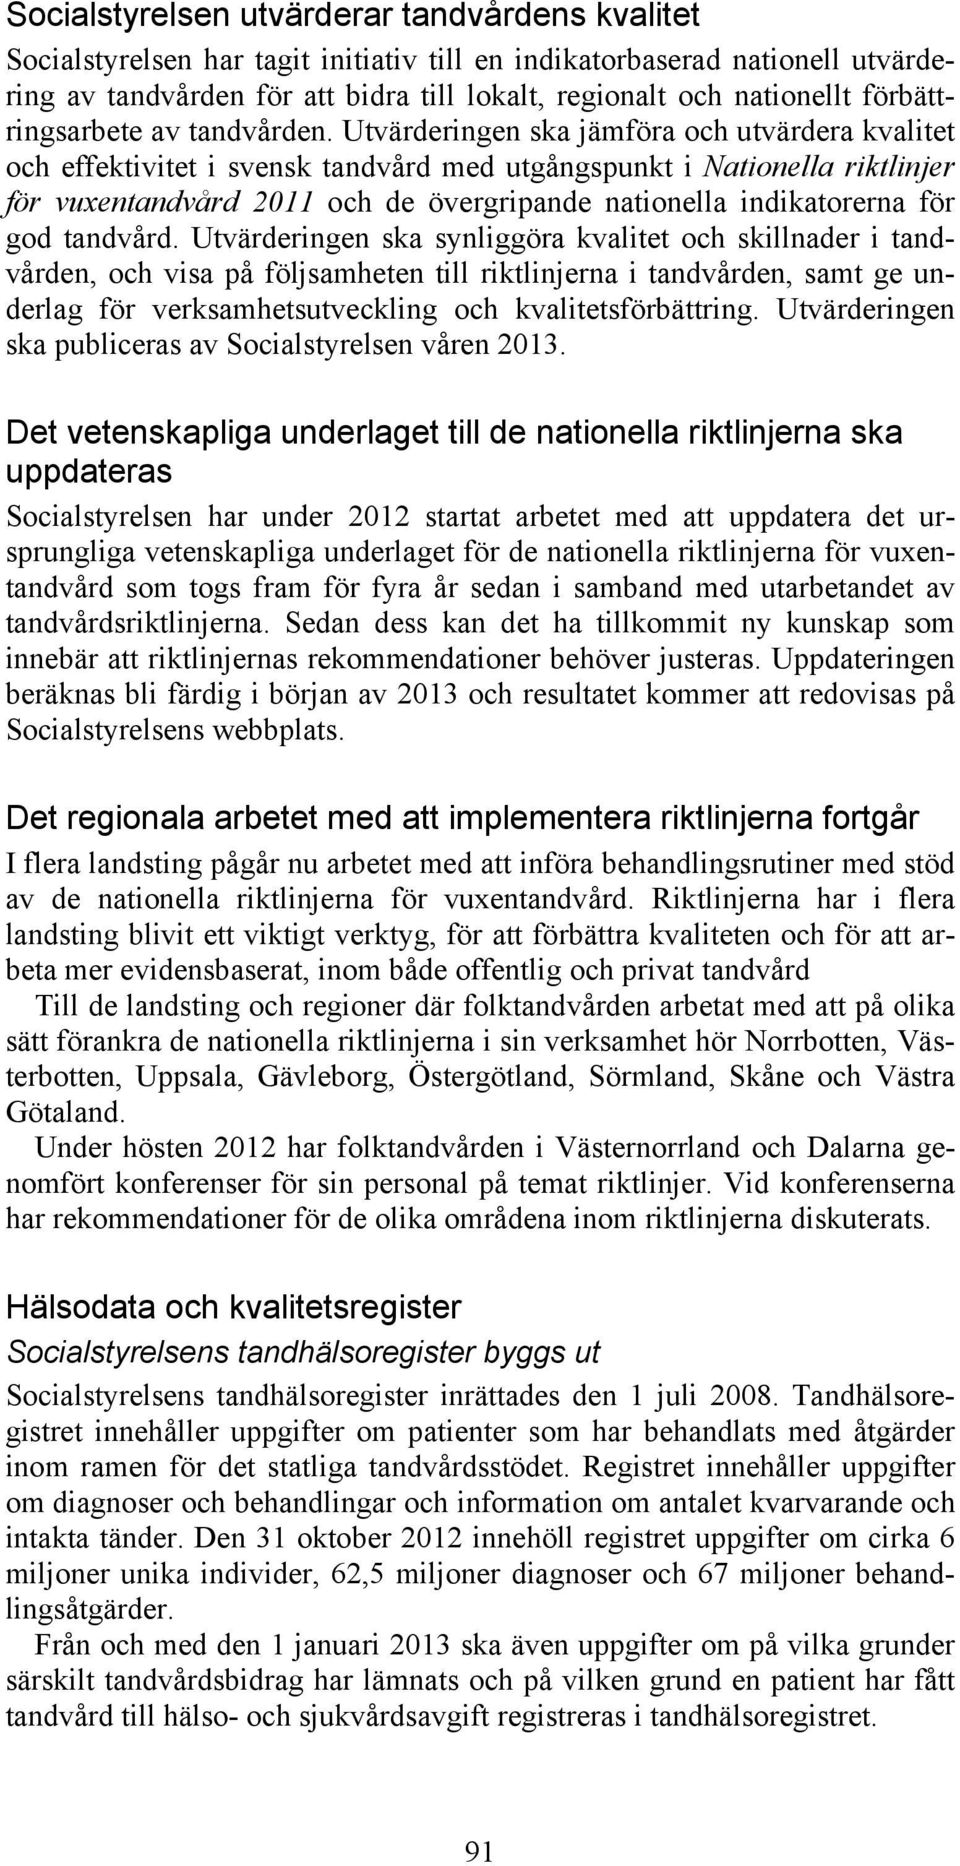 Utvärderingen ska jämföra och utvärdera kvalitet och effektivitet i svensk tandvård med utgångspunkt i Nationella riktlinjer för vuxentandvård 2011 och de övergripande nationella indikatorerna för